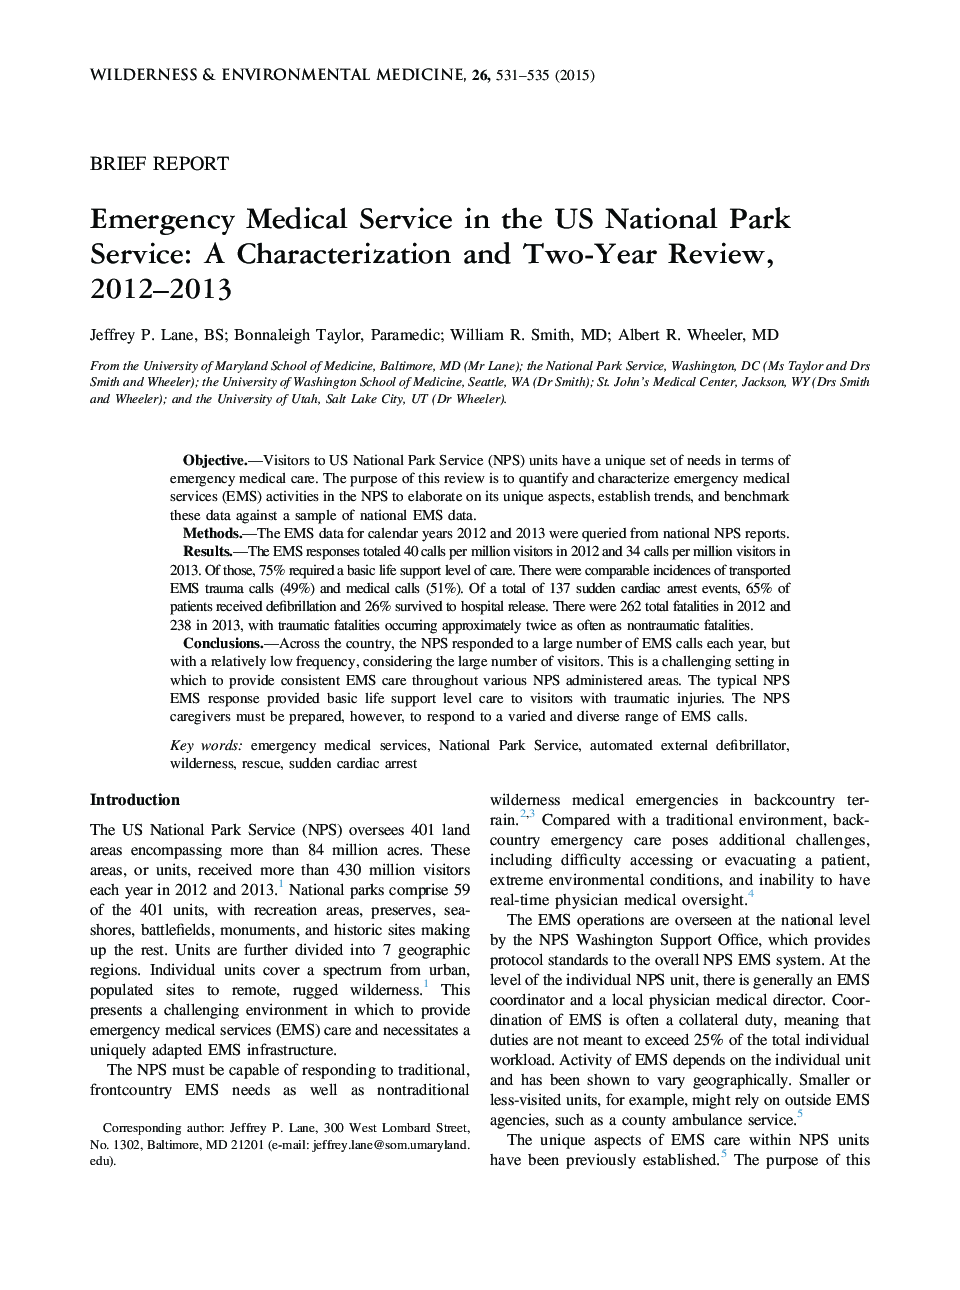 خدمات اورژانس پزشکی در خدمات پارک ملی ایالات متحده: تعیین خواص و دو سال نقد و بررسی، 2012-2013